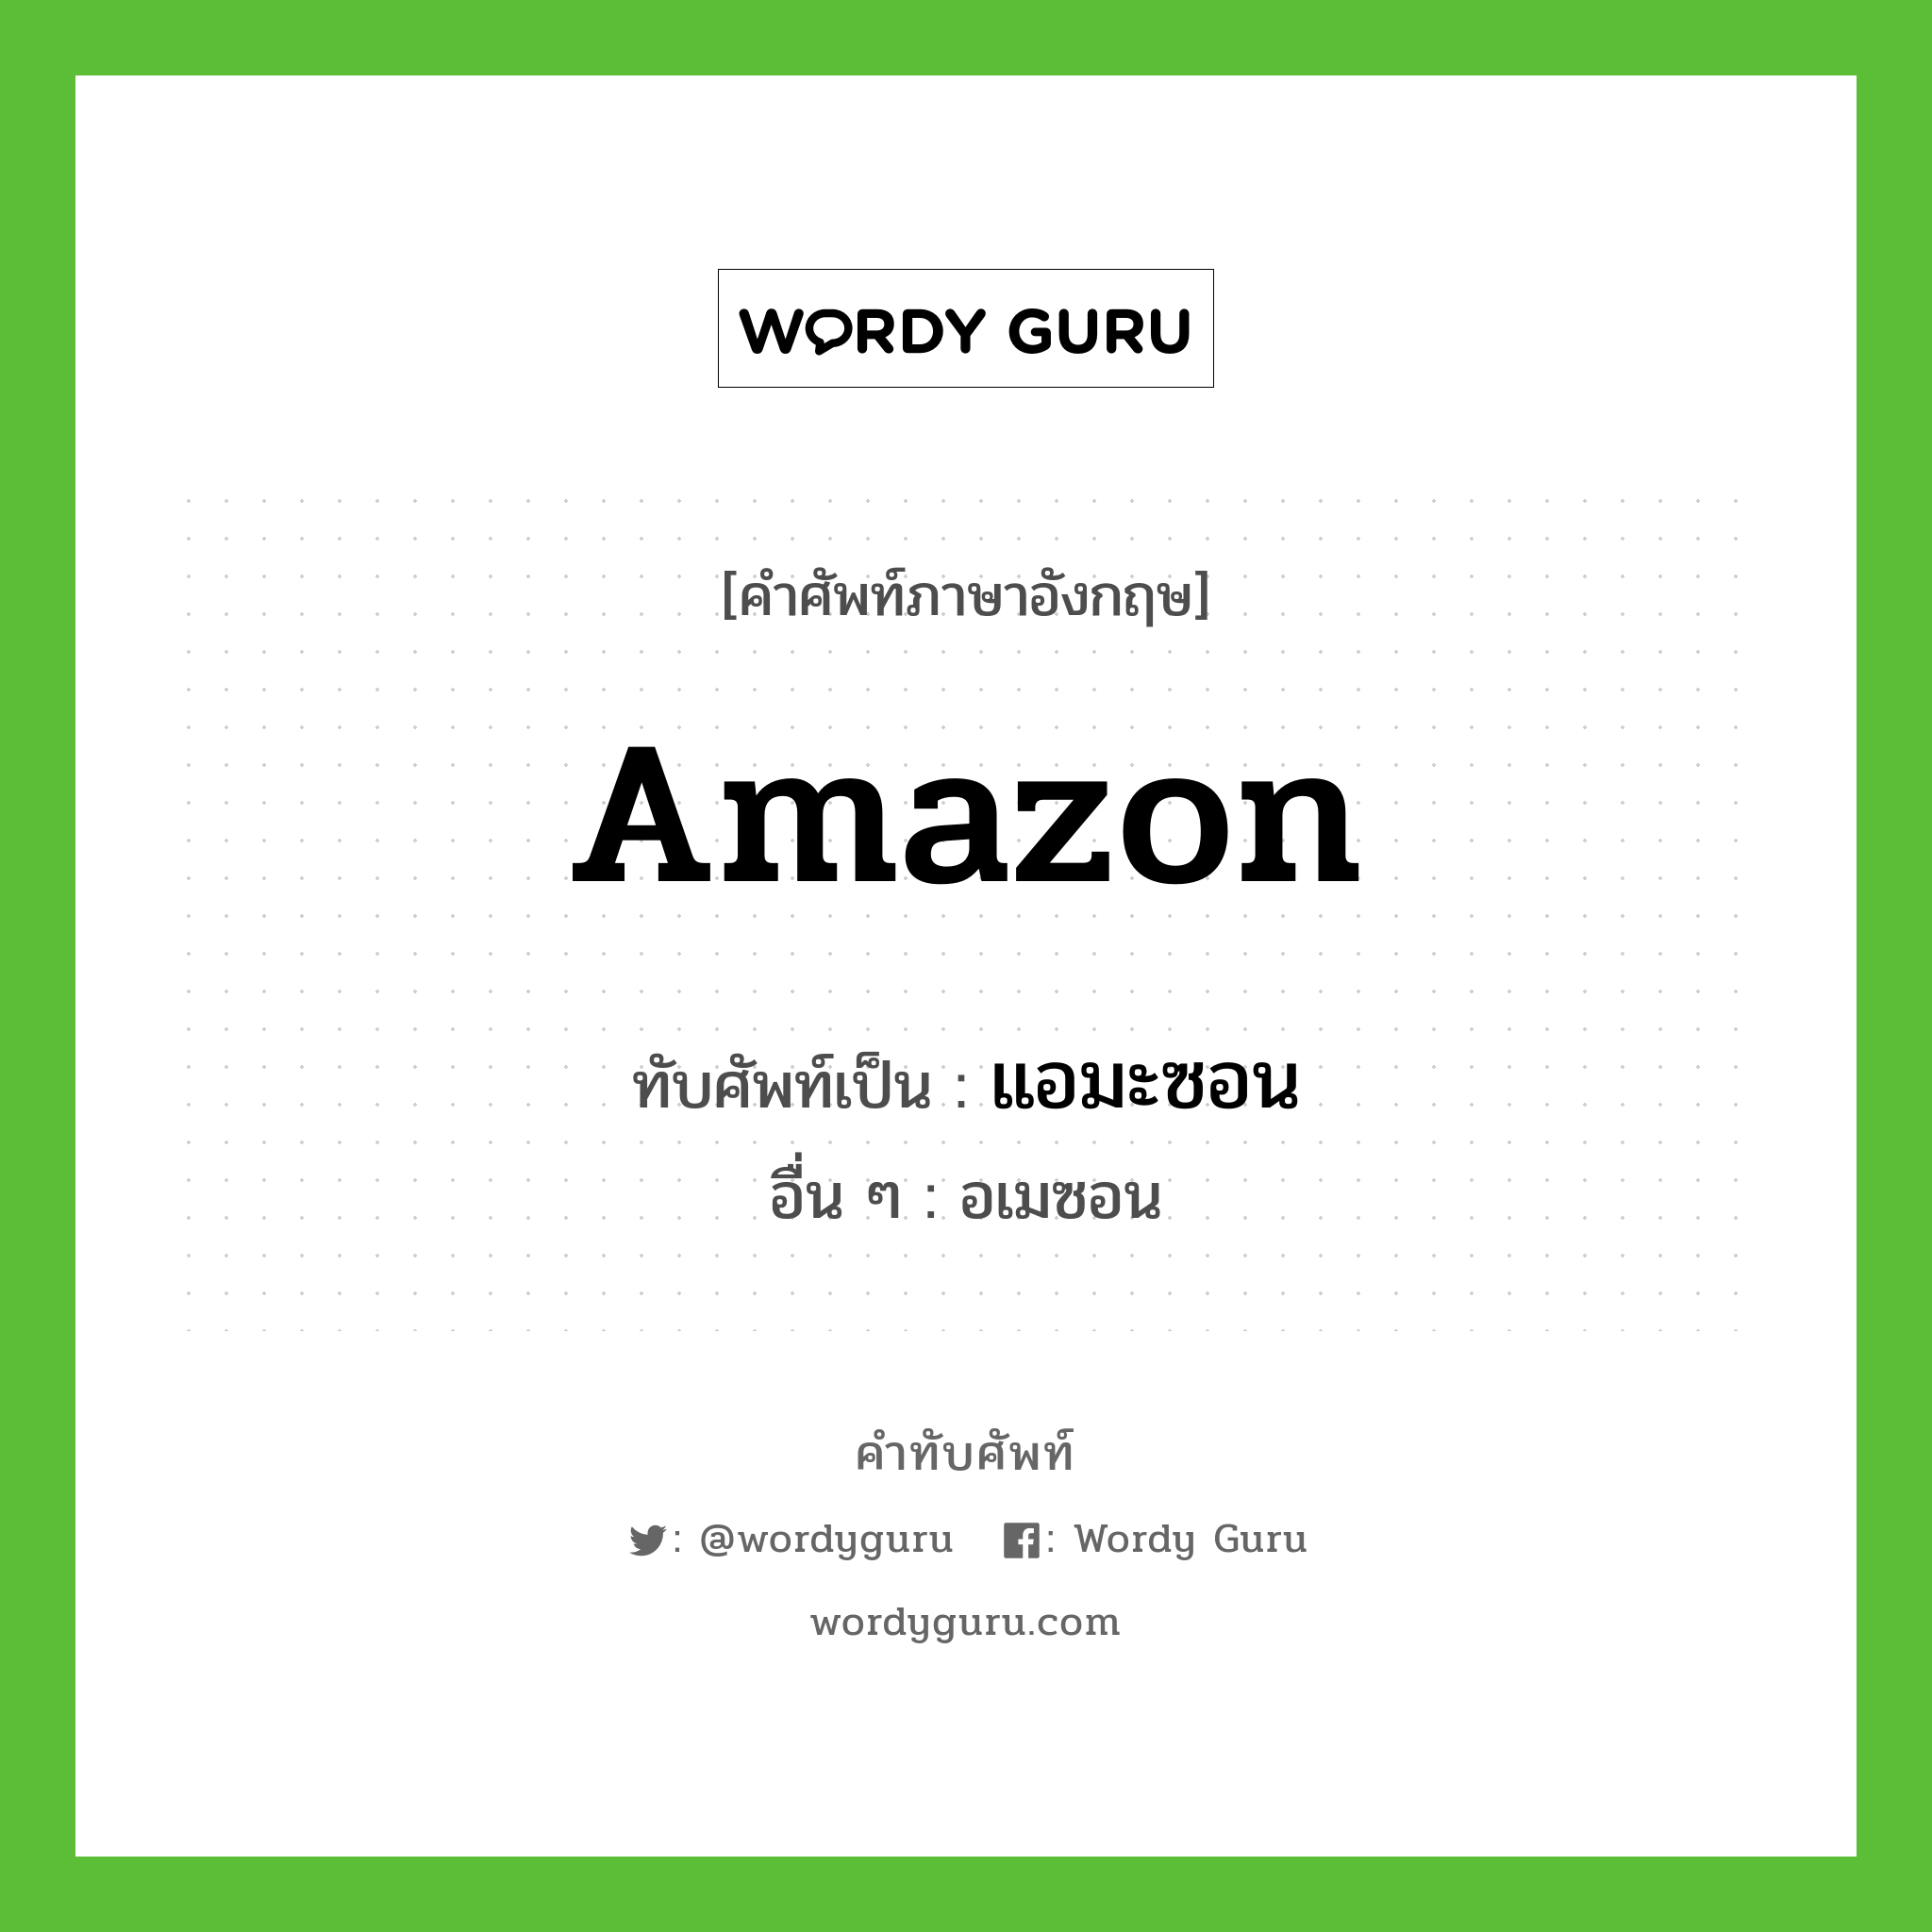 Amazon เขียนเป็นคำไทยว่าอะไร?, คำศัพท์ภาษาอังกฤษ Amazon ทับศัพท์เป็น แอมะซอน อื่น ๆ อเมซอน